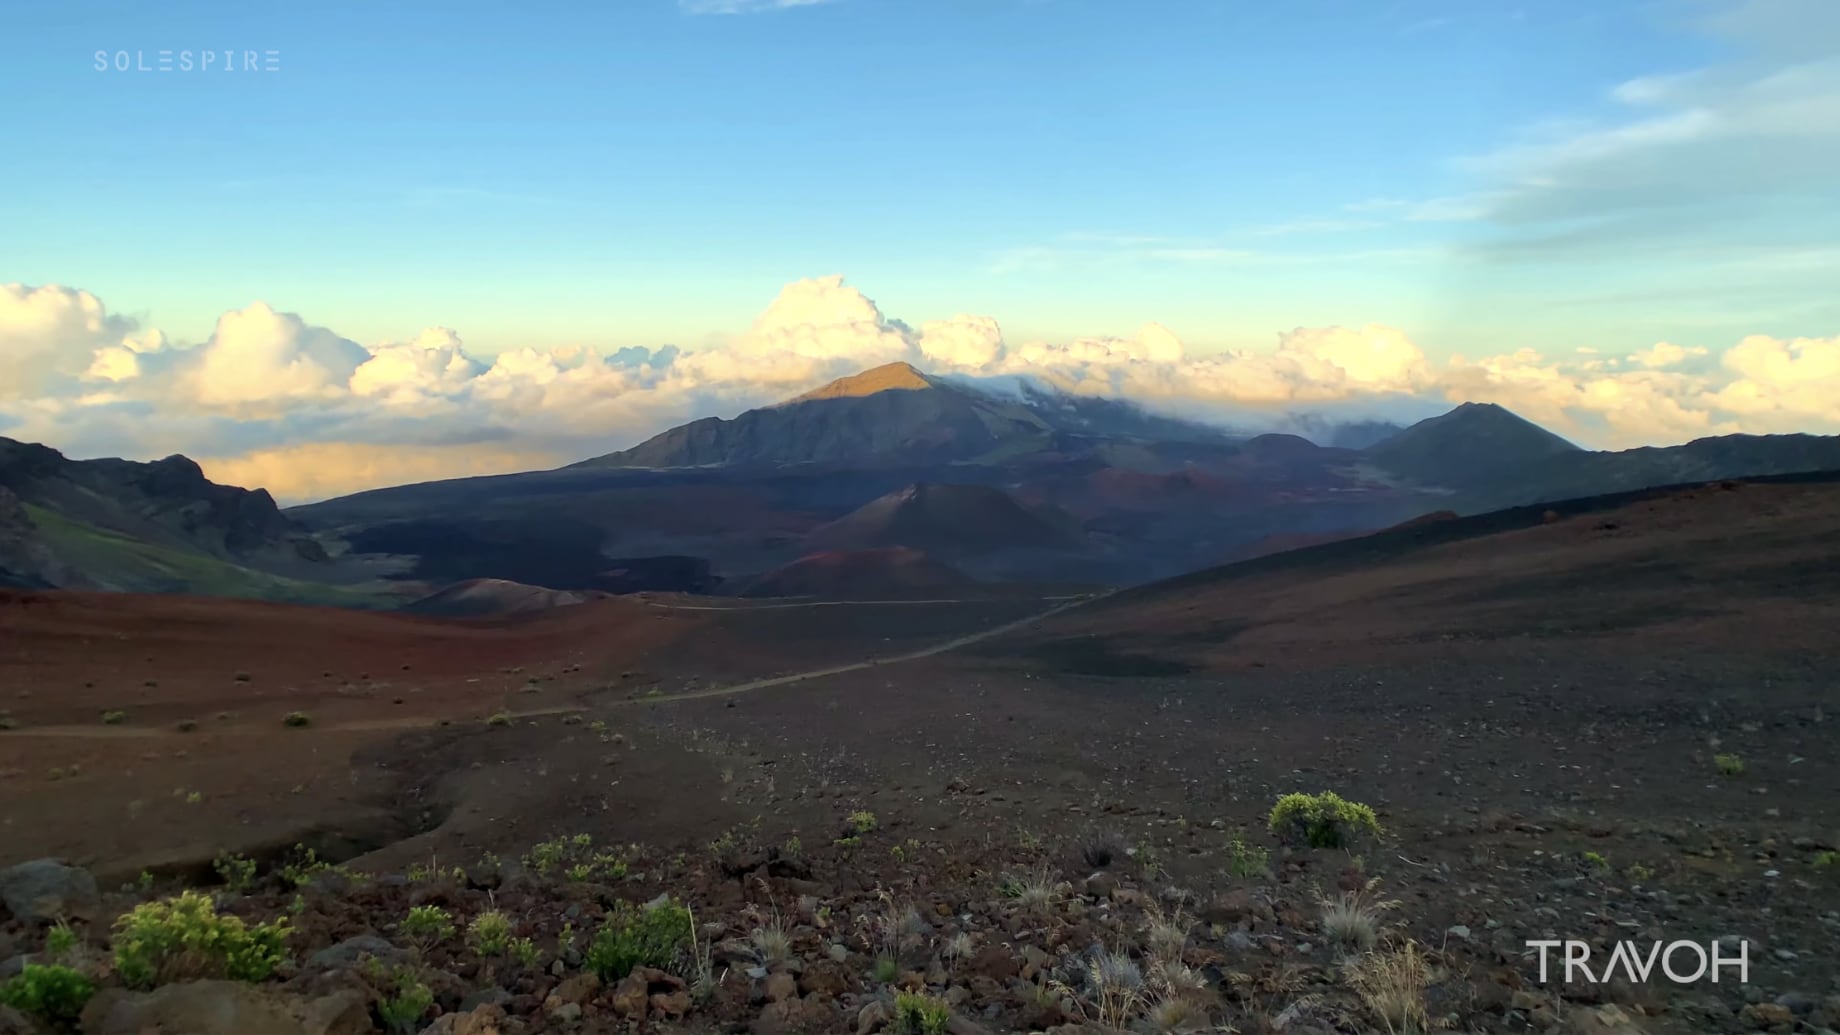 Haleakala National Park - Volcano Crater Hike 10,000 ft Elevation - Maui Hawaii USA - 4K Travel